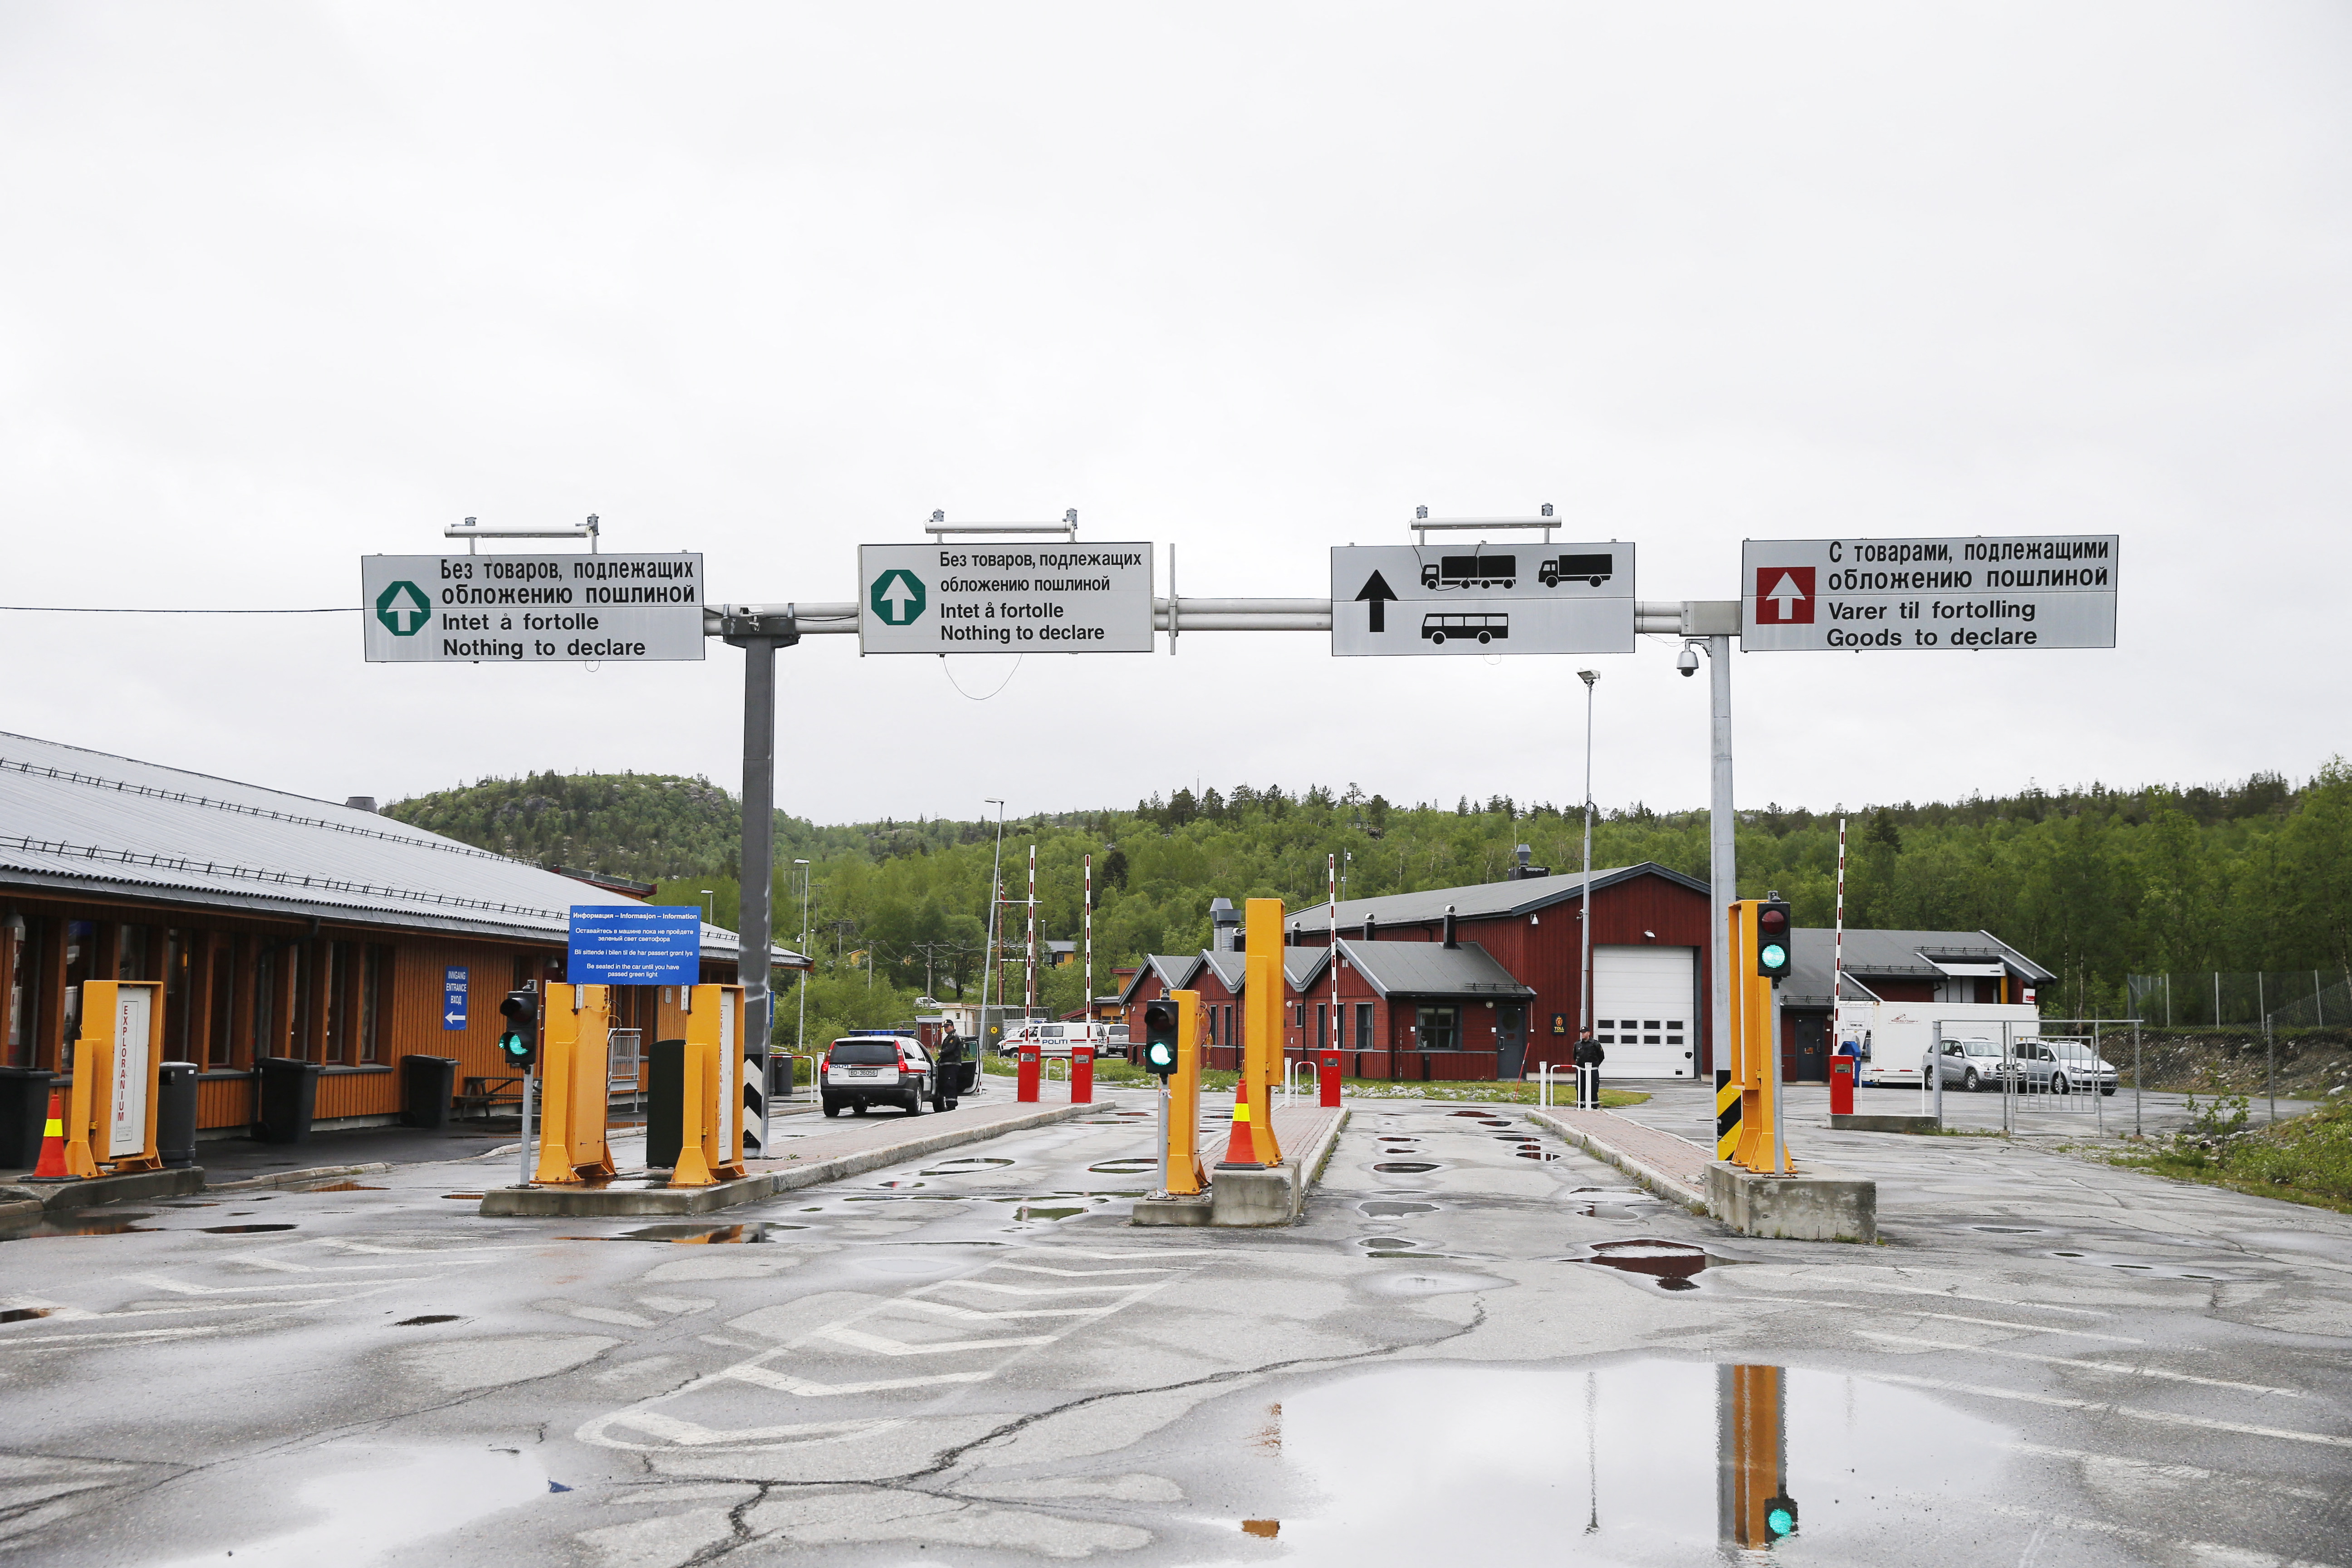  Le poste-frontière Storskog-Boris Gleb est le dernier point de passage encore ouvert aux Russes disposant d'un visa touristique. AFP/Cornelius Poppe,